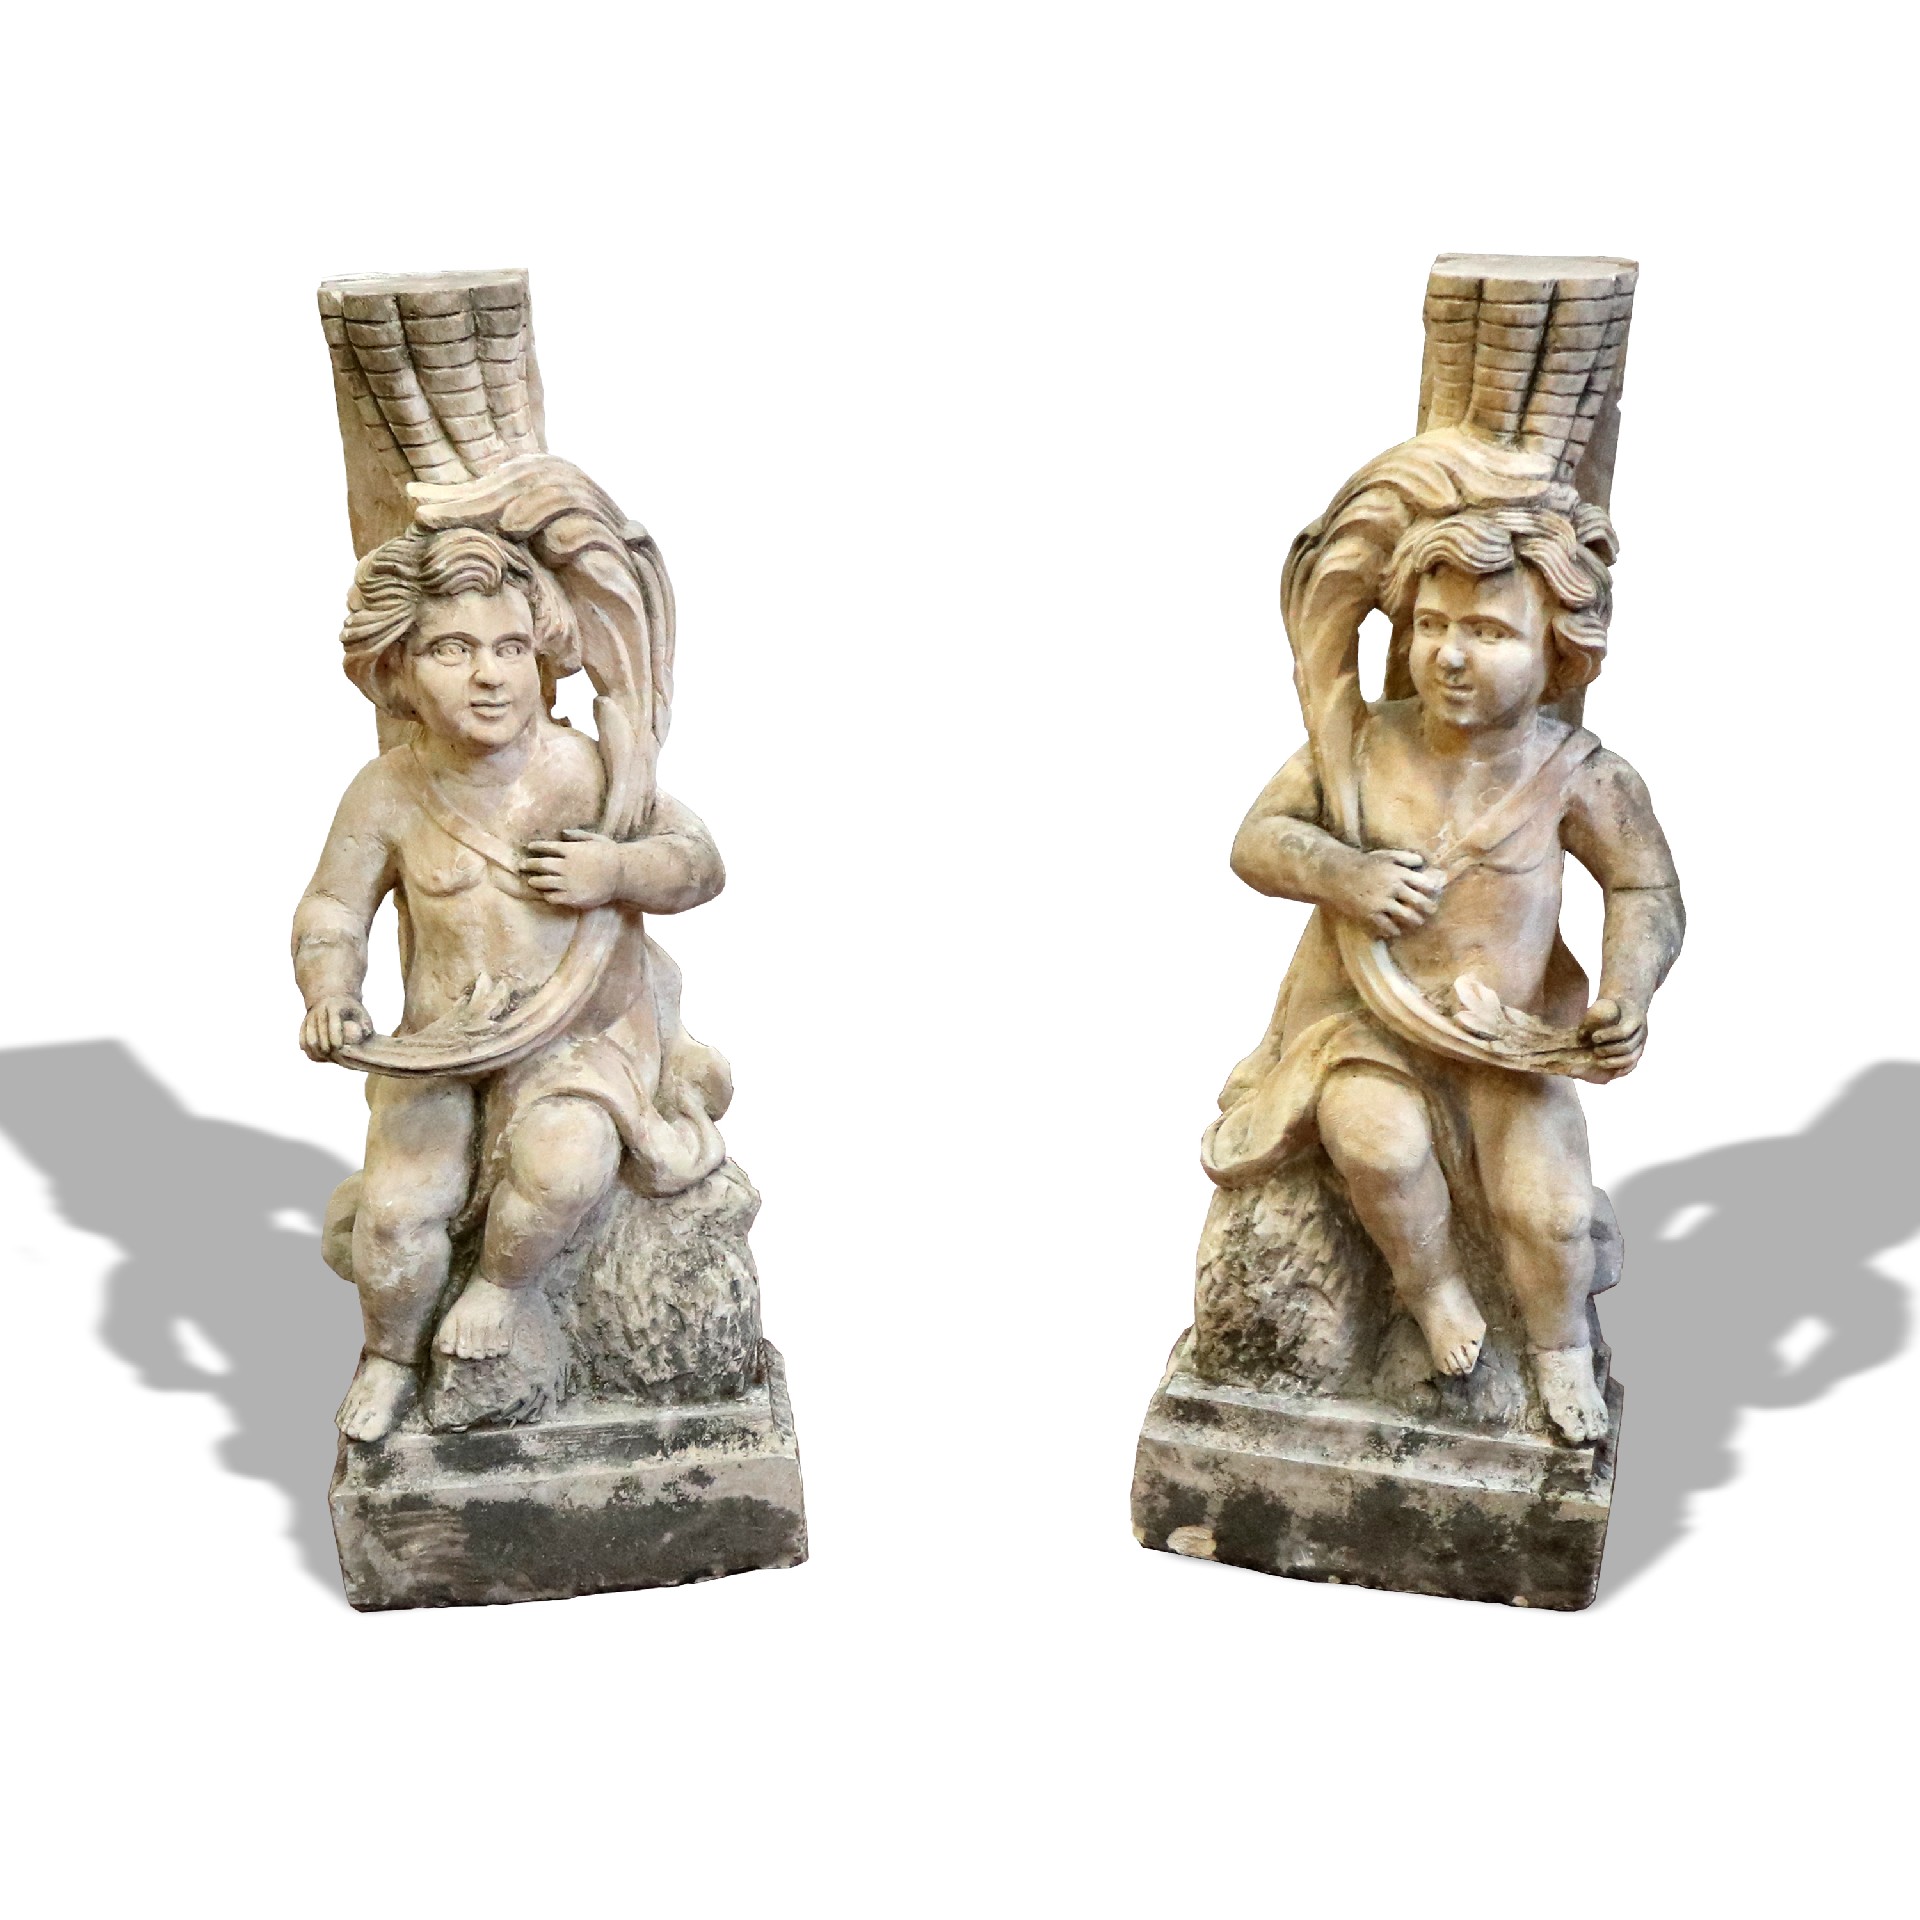 Antica coppia di sculture in pietra. - Statue Antiche - Sculture Antiche - Prodotti - Antichità Fiorillo